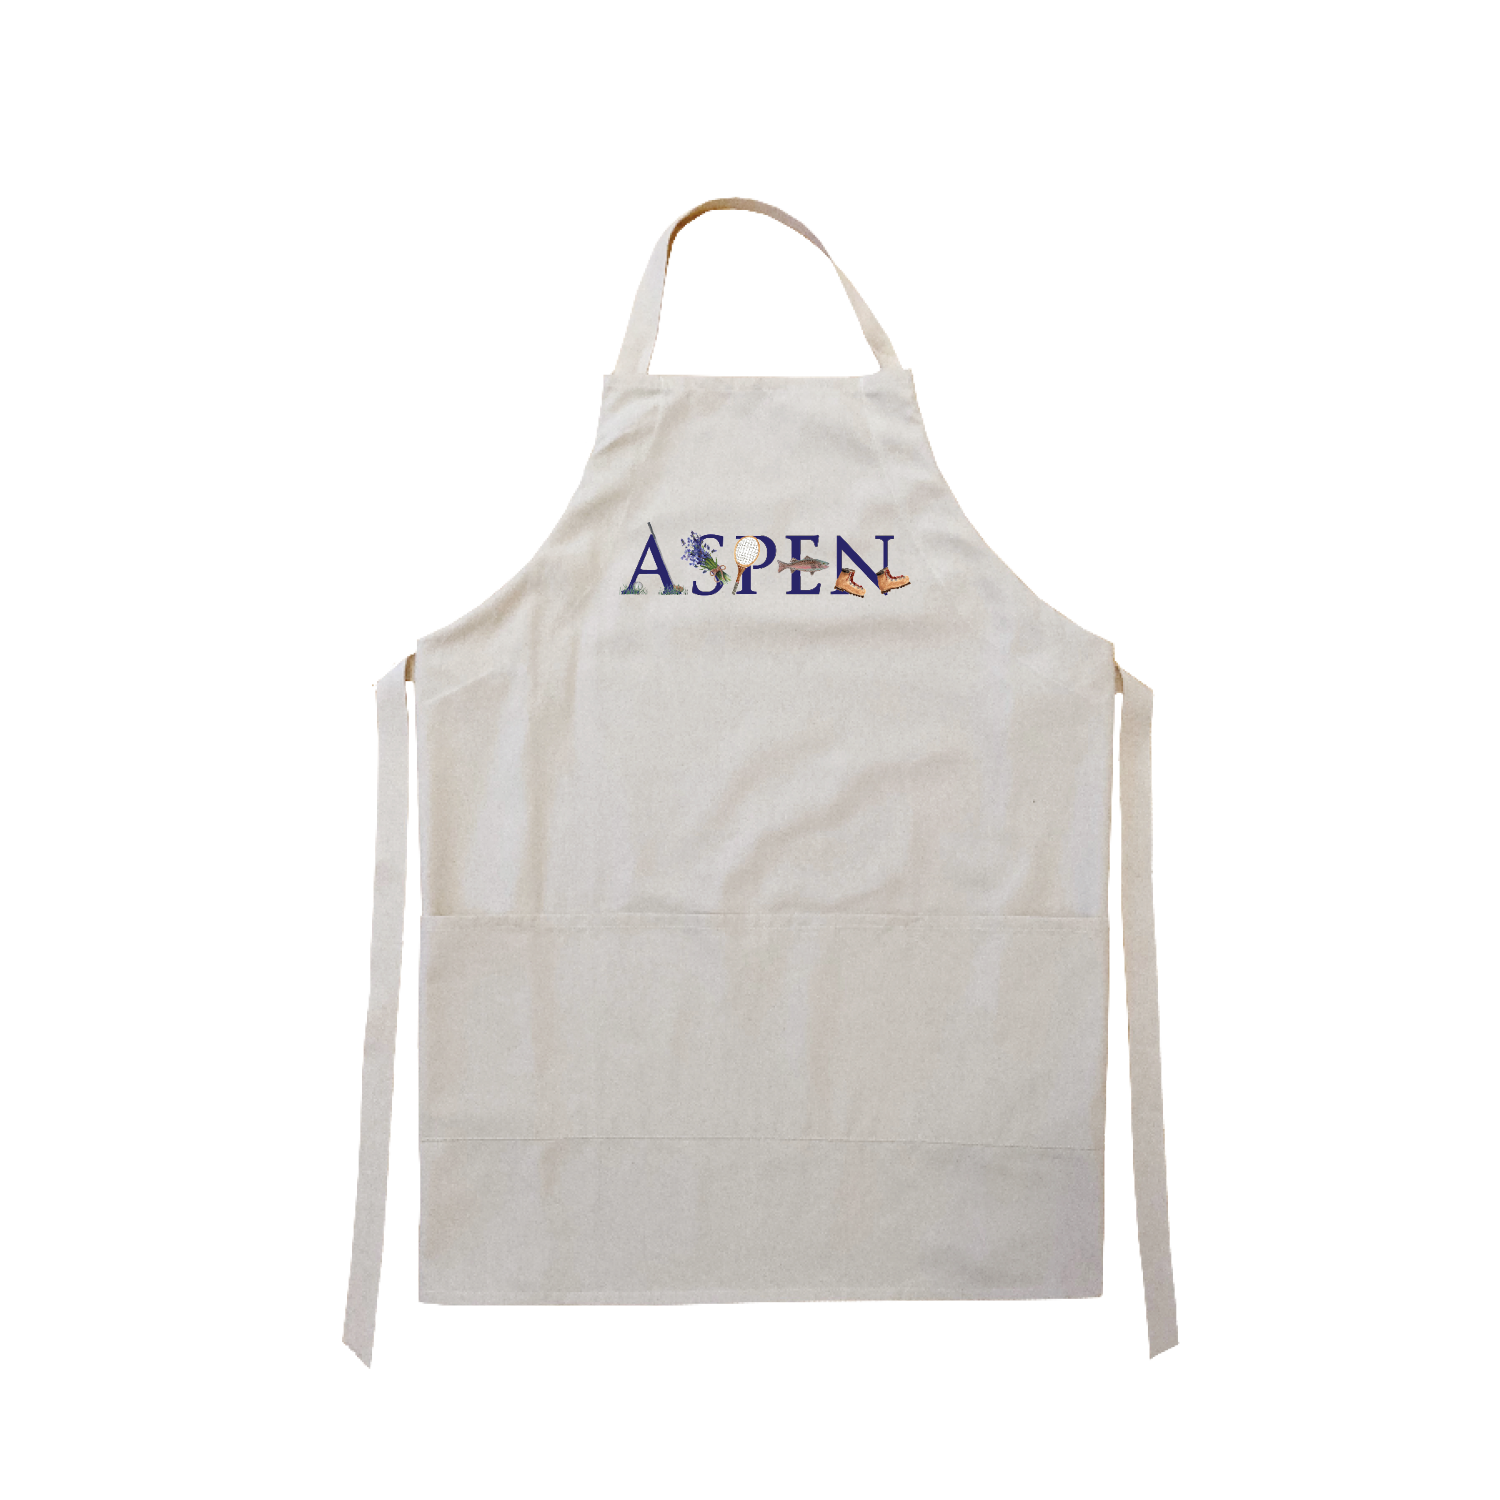 aspen summer apron